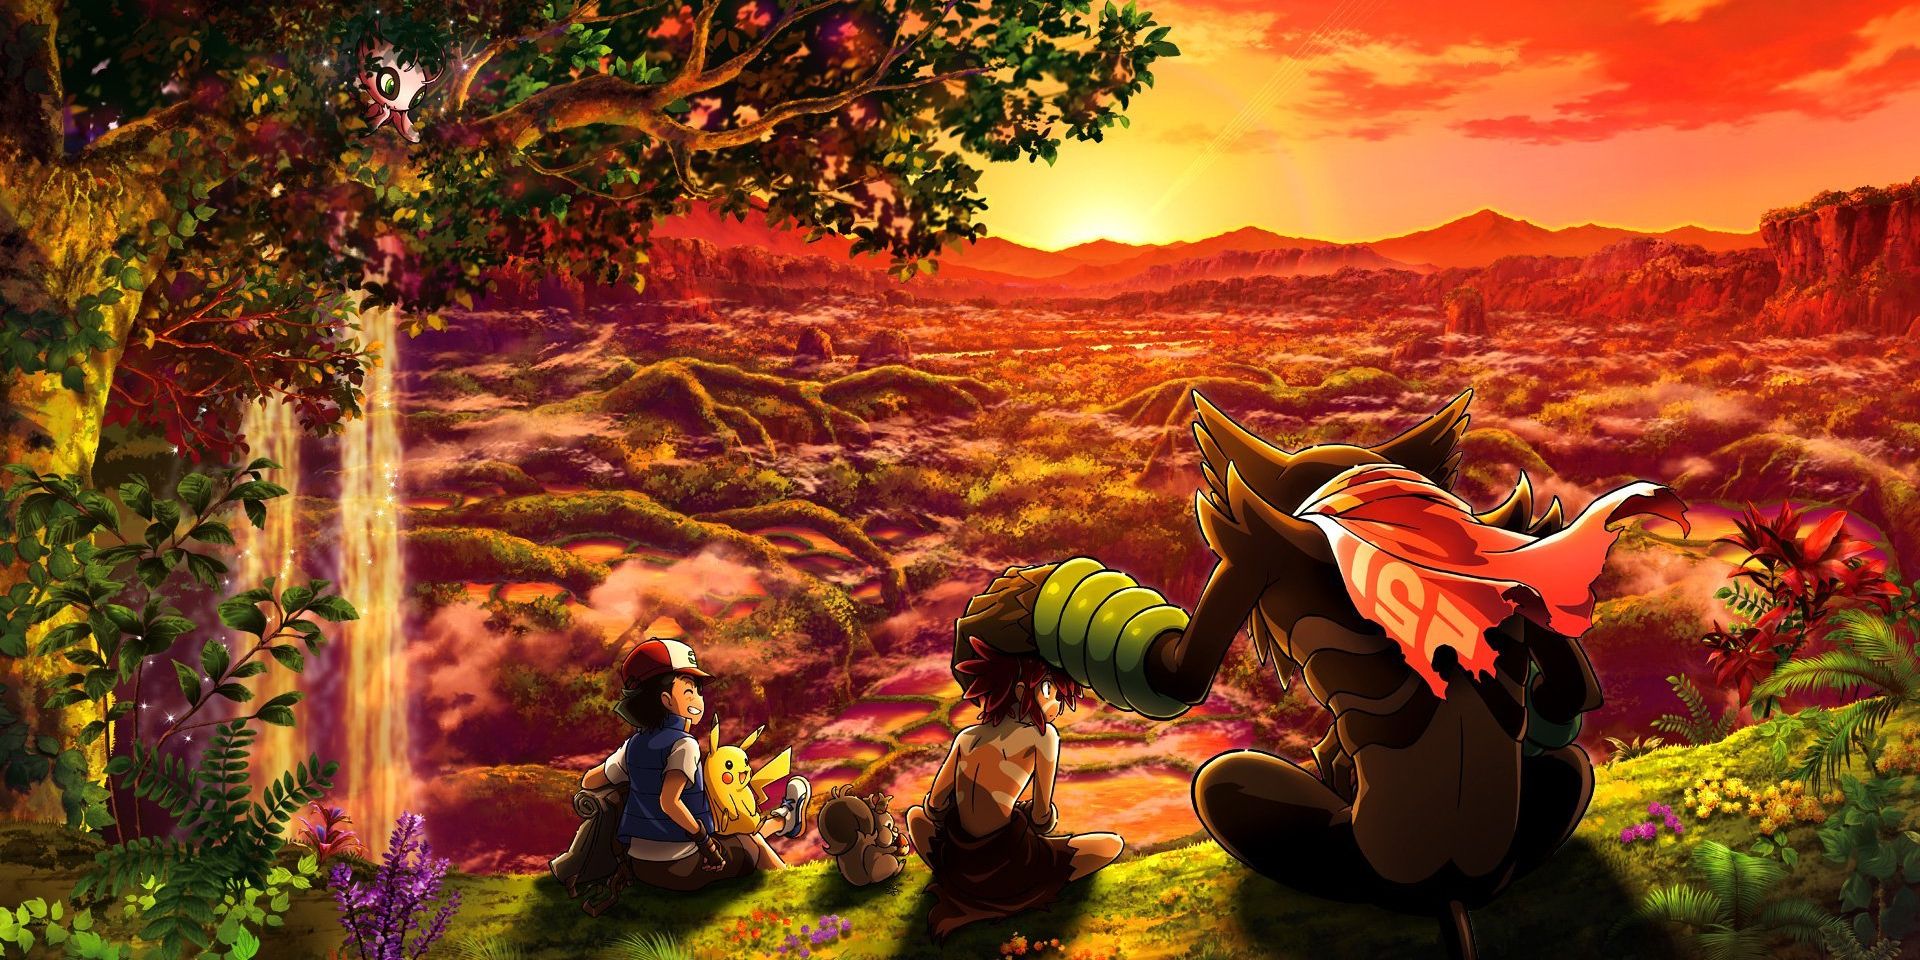 Koko, Zarude, and Ash in Secrets of the Jungle Pokemon movie